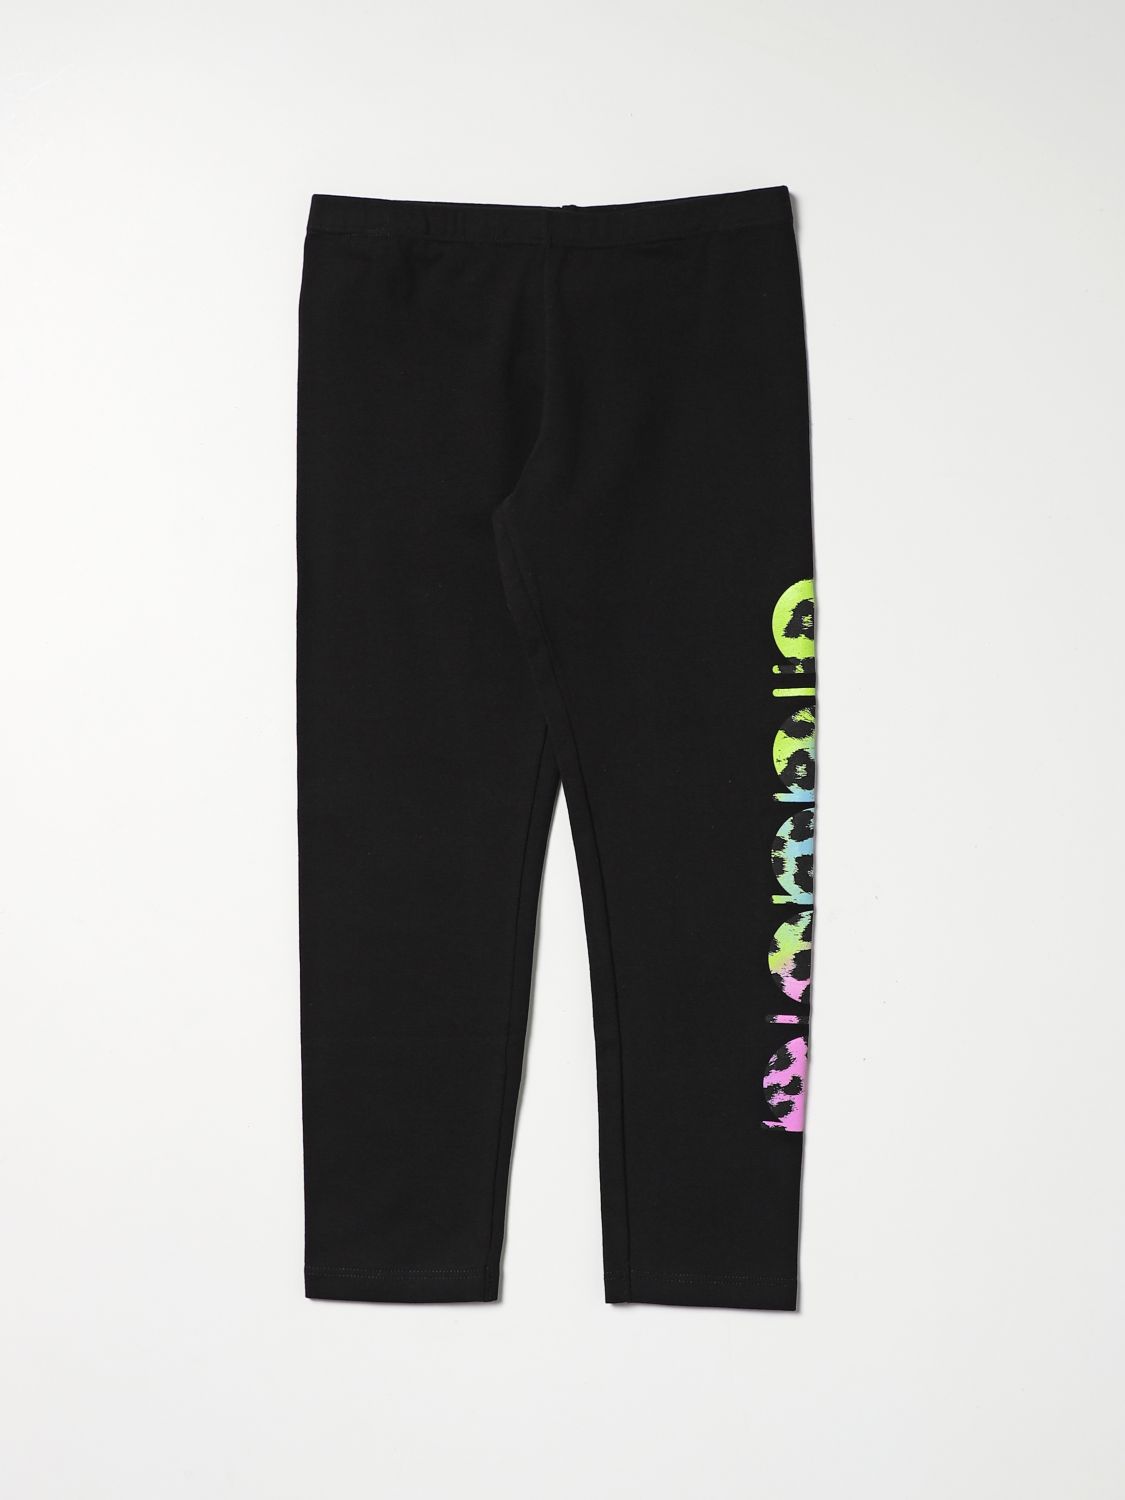 DIADORA: pants for girls - Black | Diadora pants 030178 online on ...